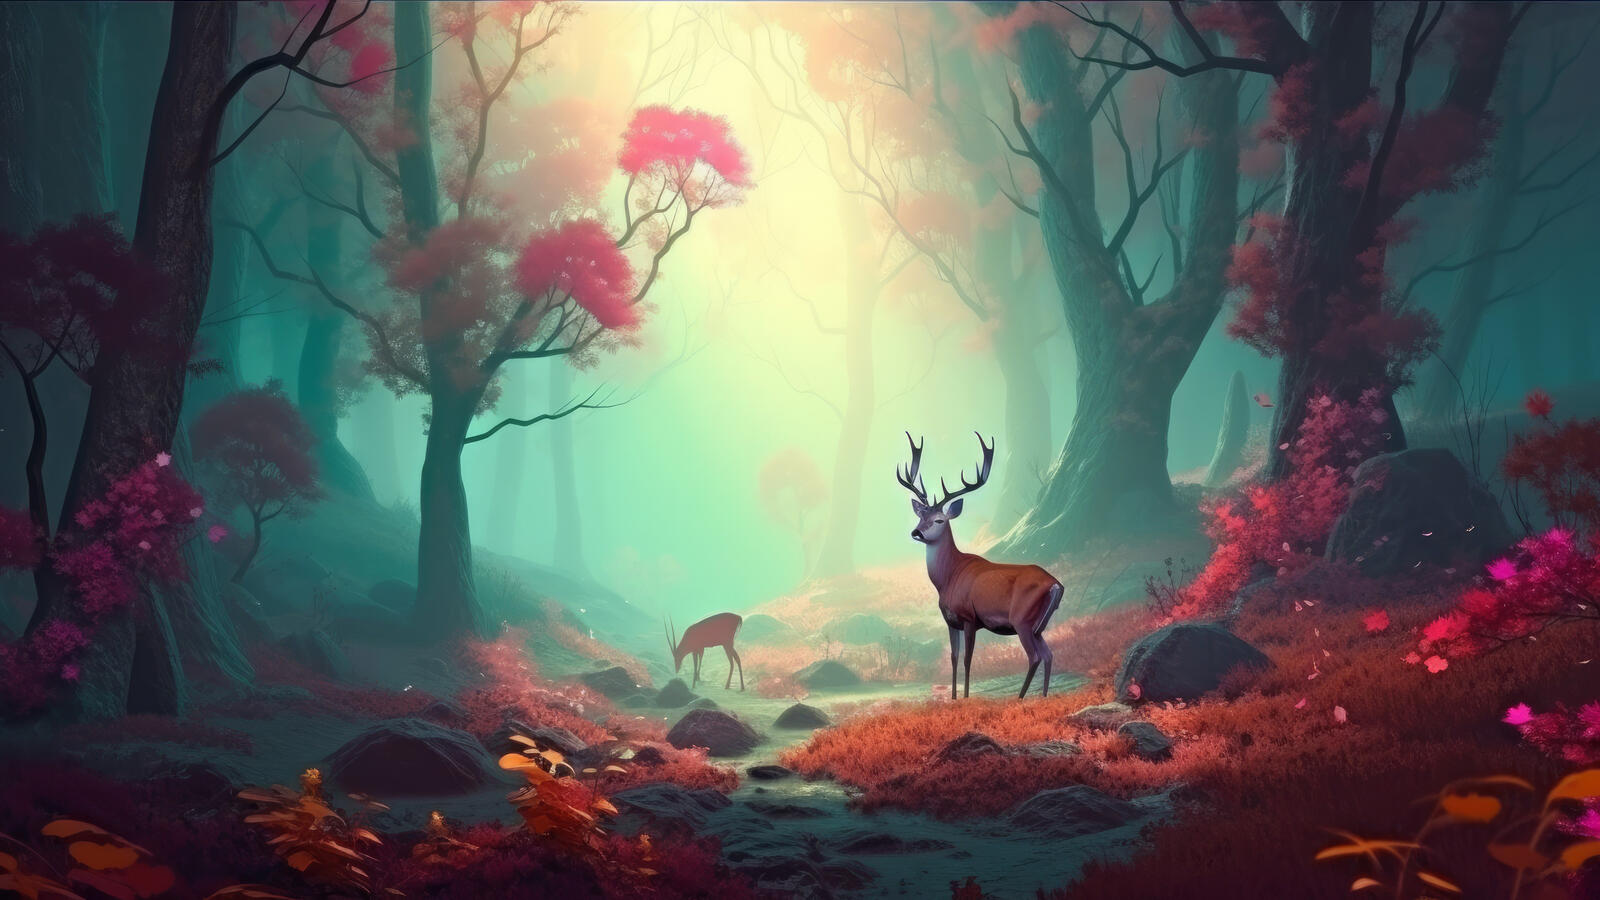 Бесплатное фото Фантастический туманный лес с оленями